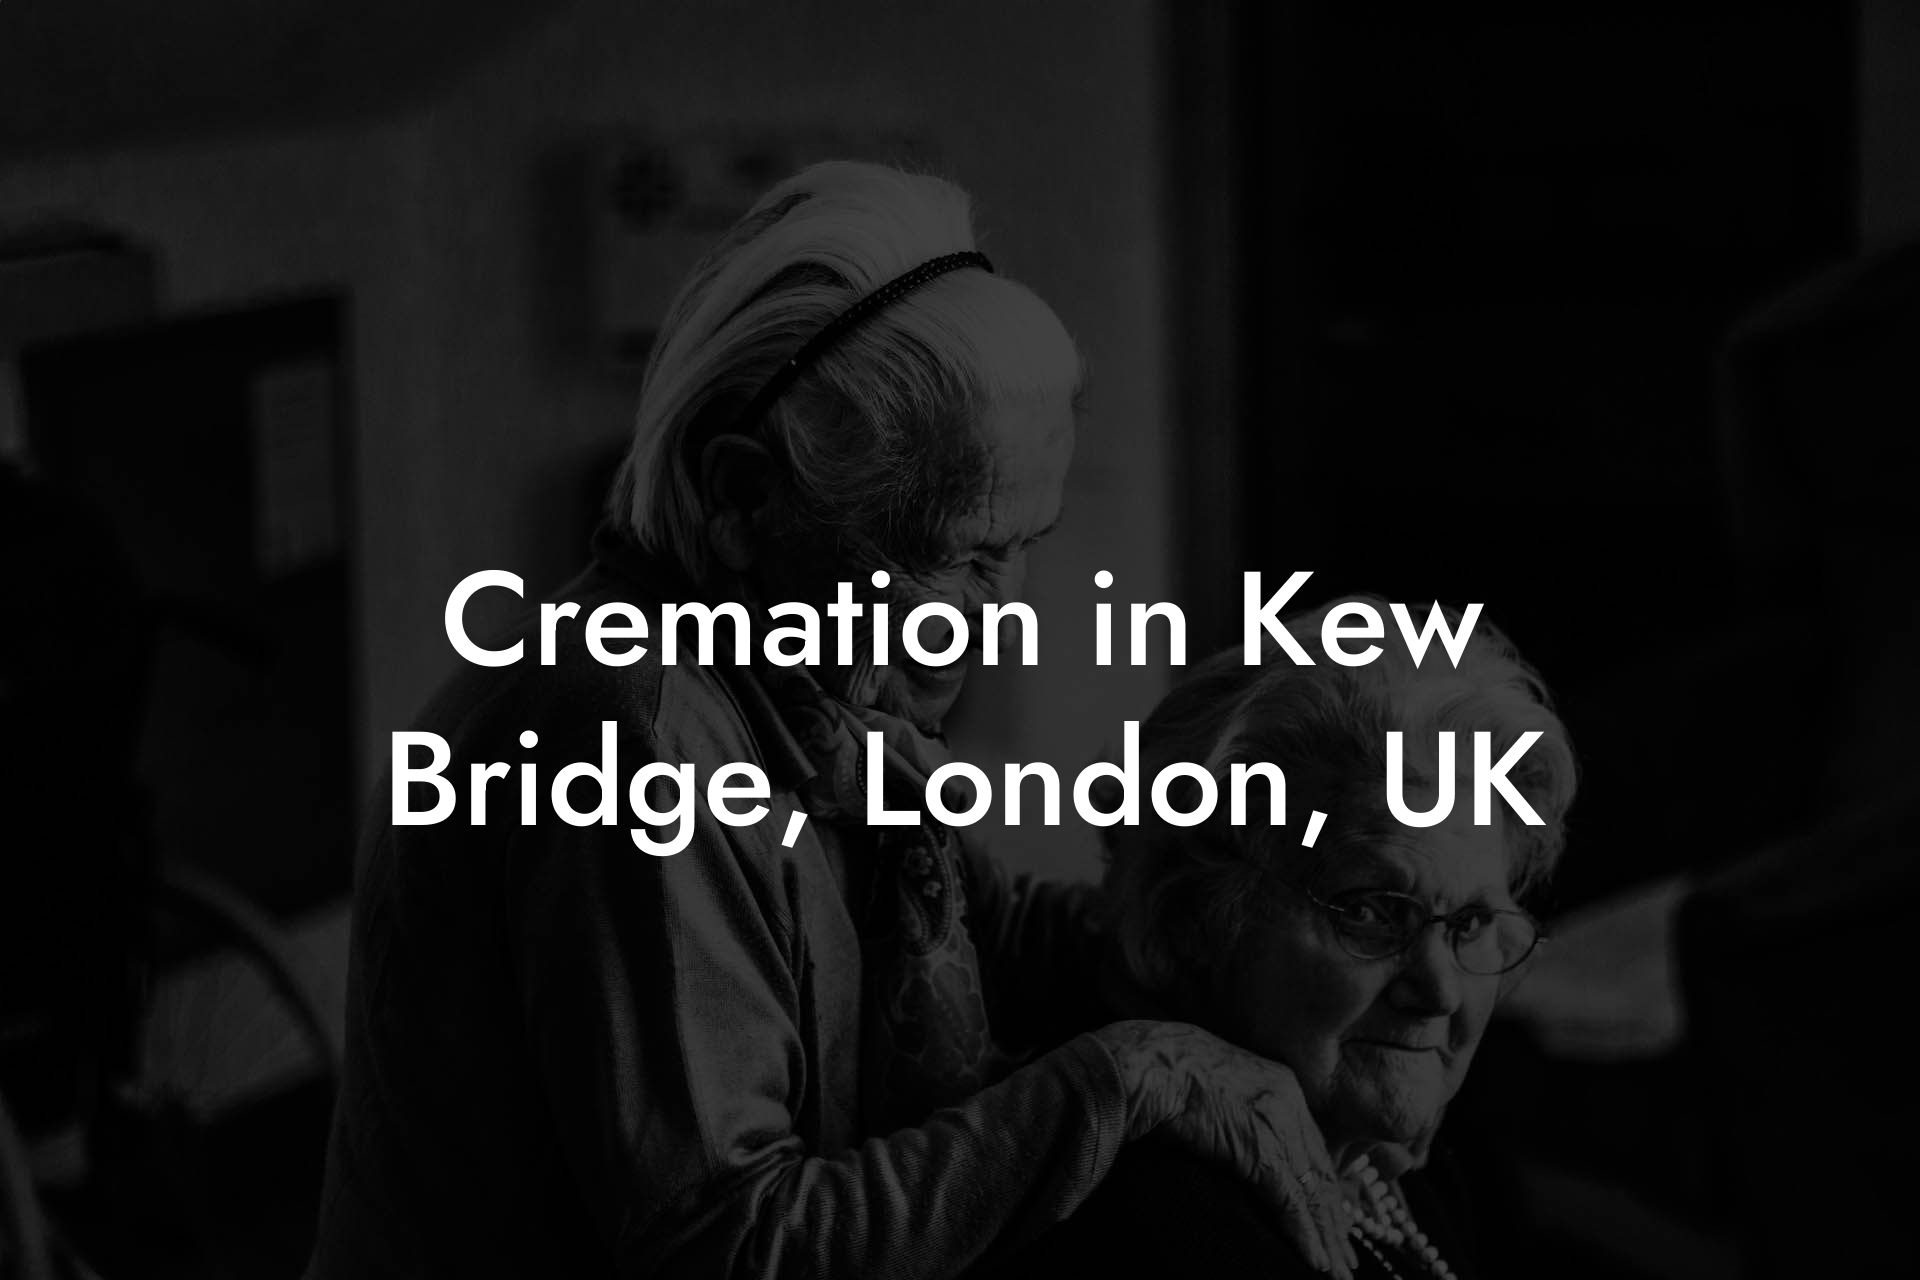 Cremation in Kew Bridge, London, UK